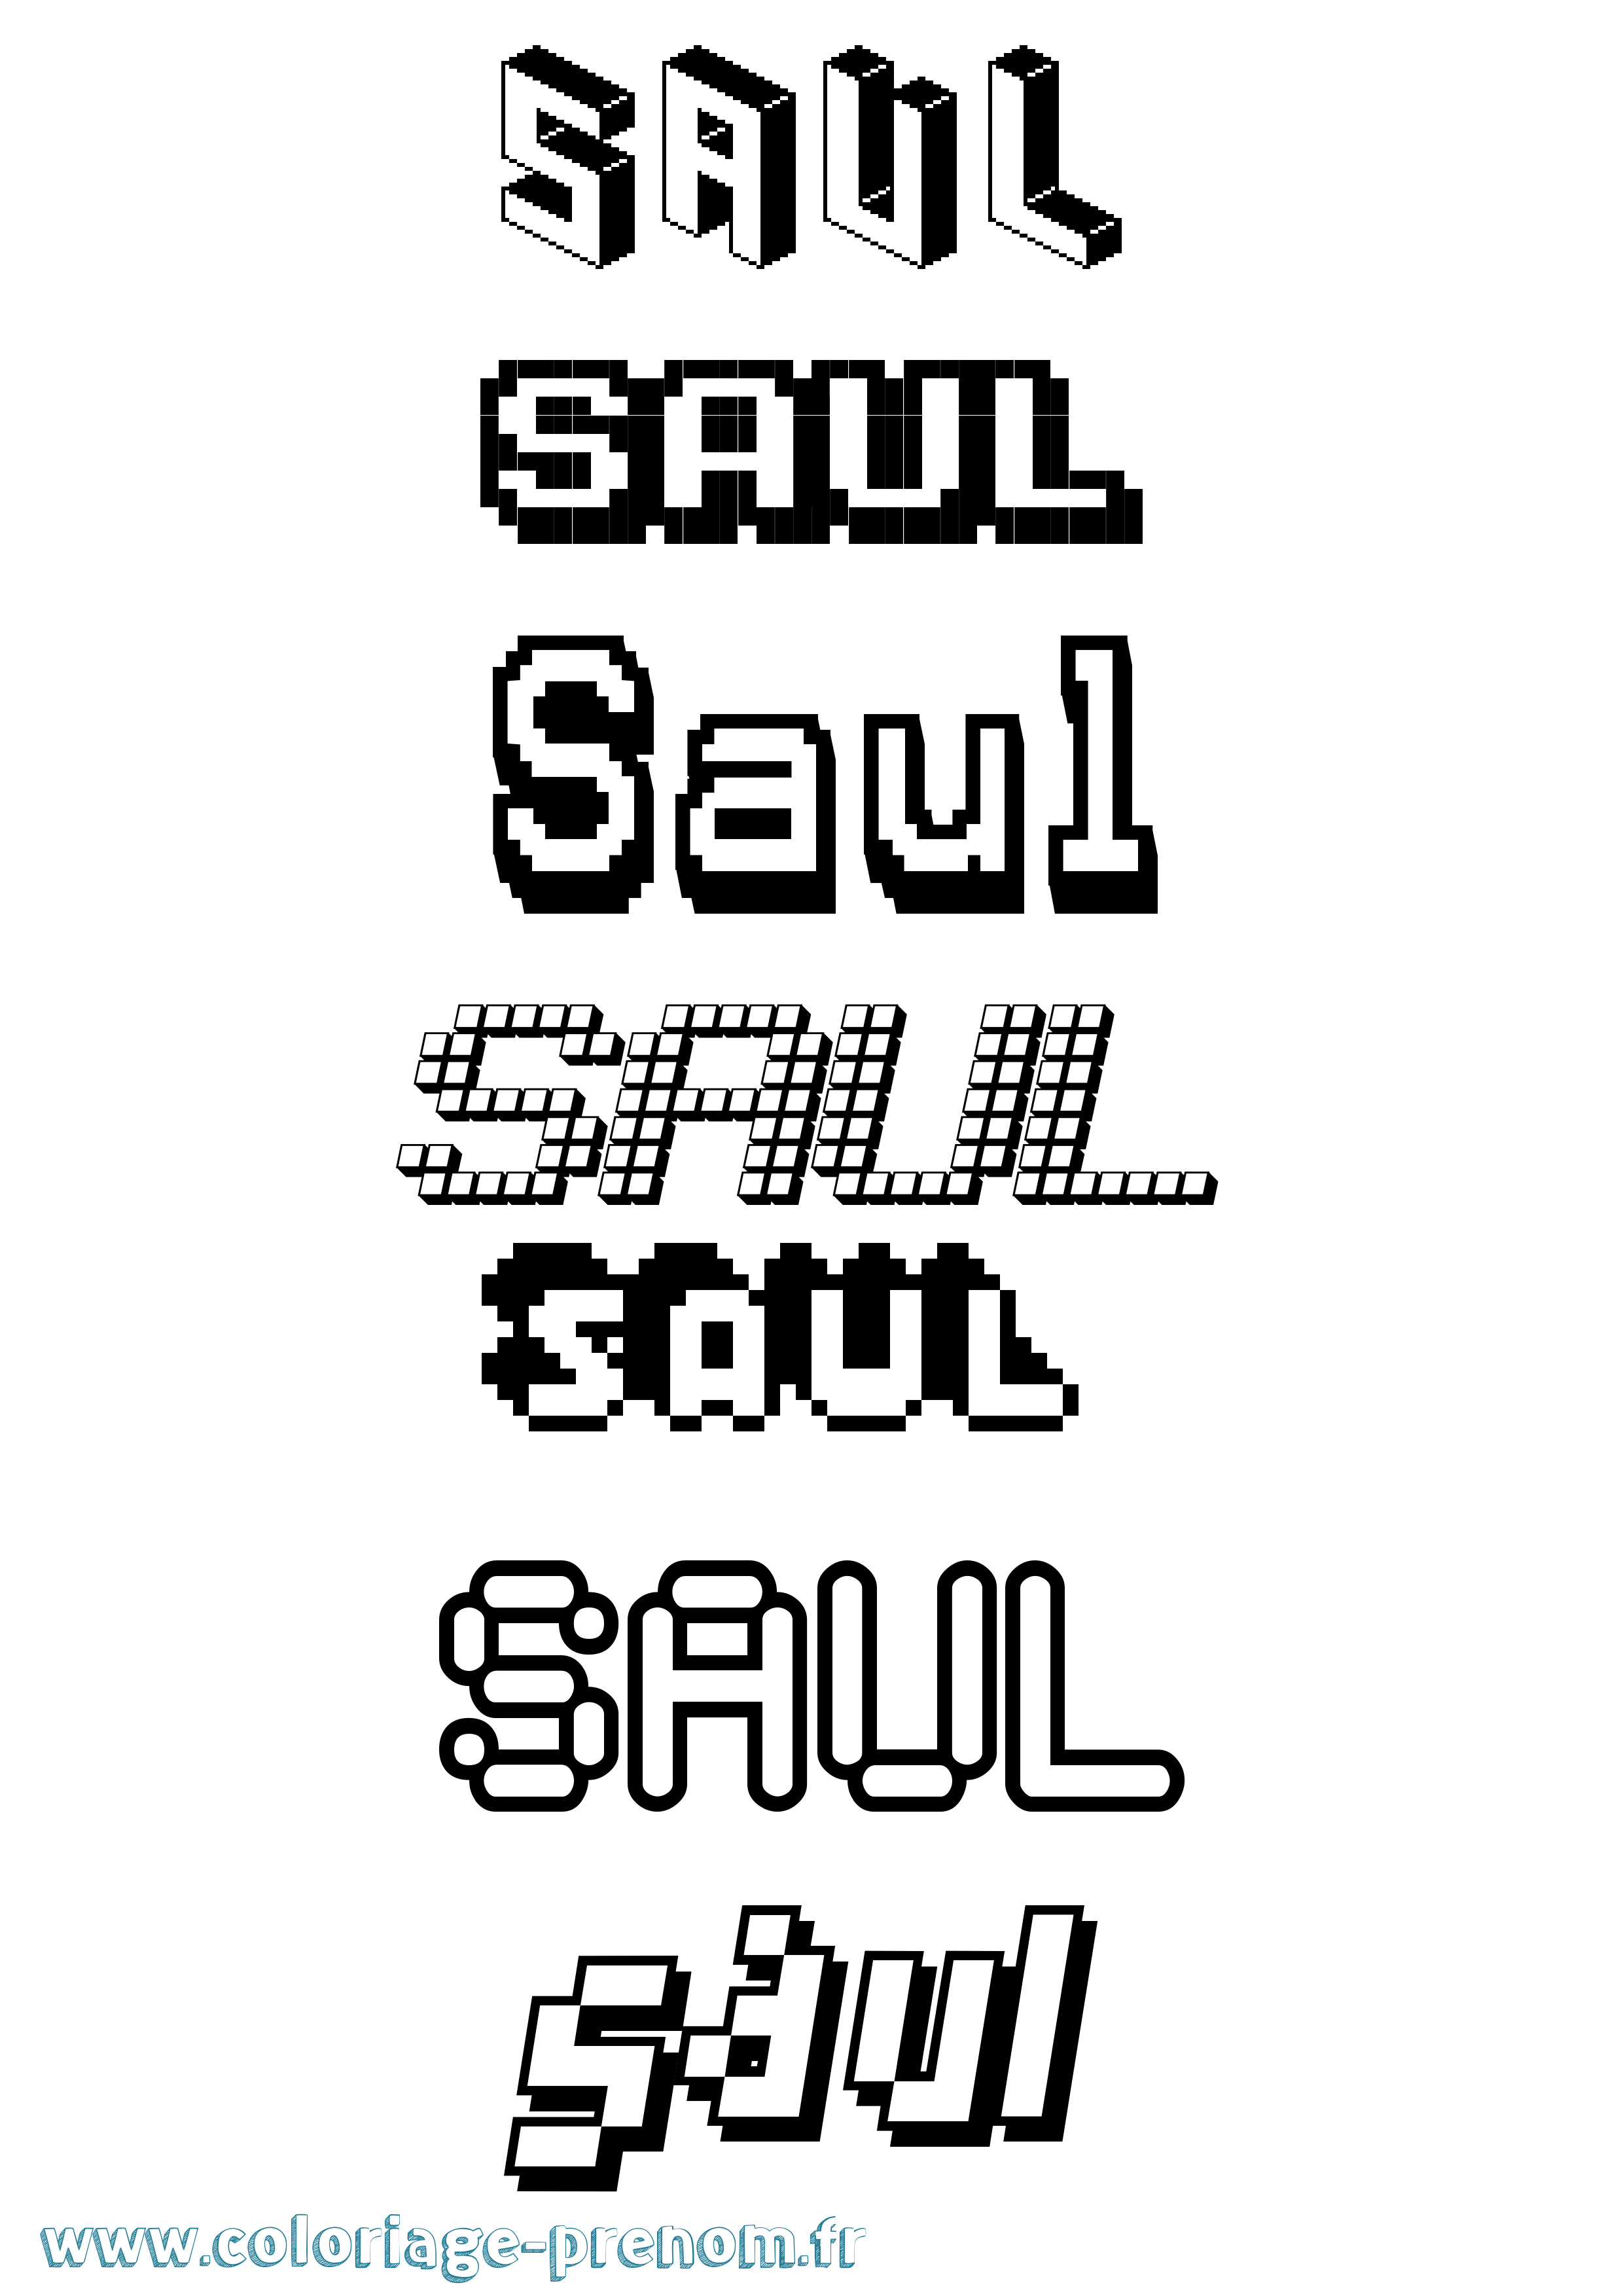 Coloriage prénom Saul Pixel